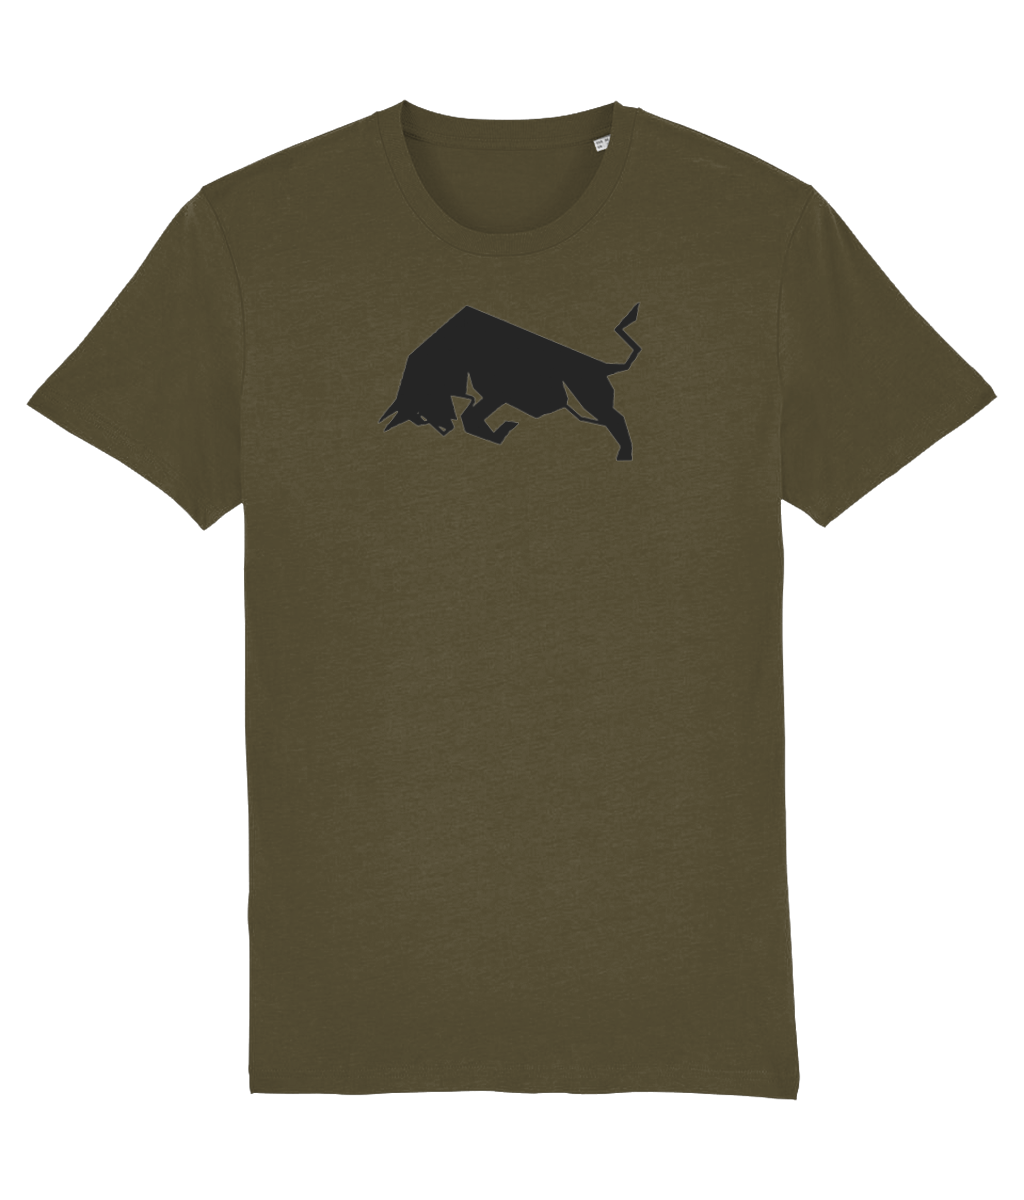 British Khaki Bull Organic Cotton T-Shirt